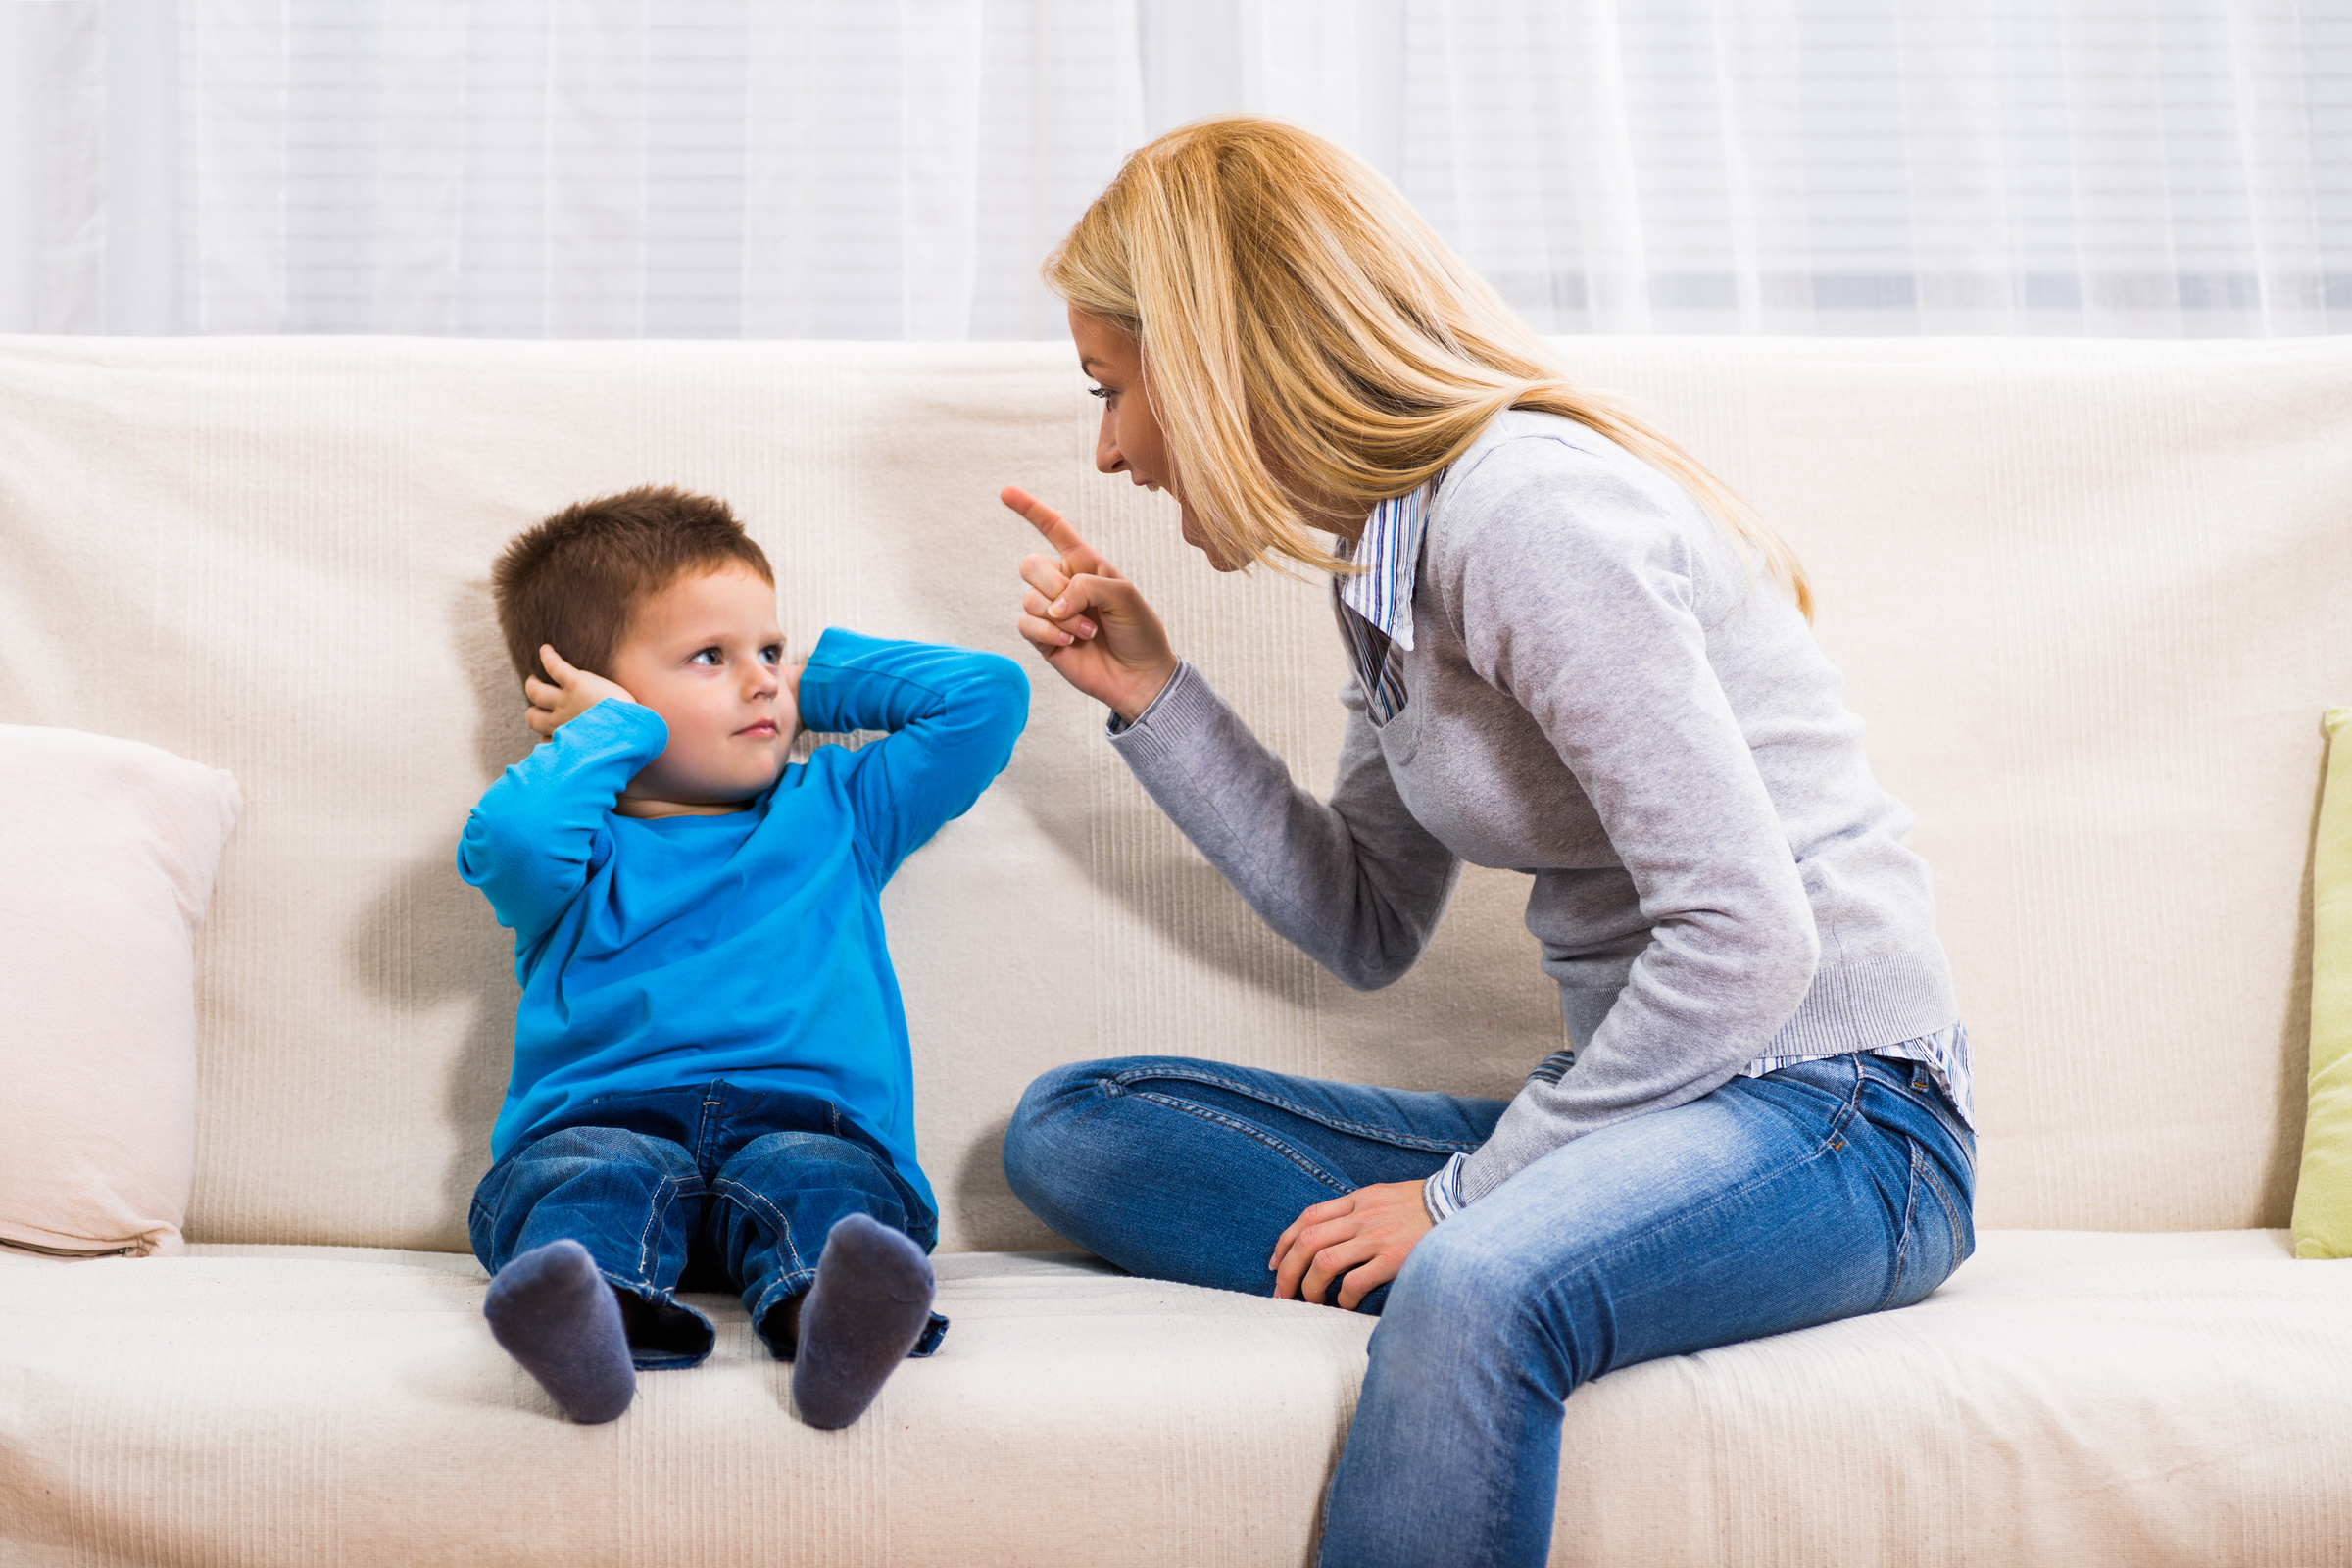 Частые ссоры и конфликты портят отношения Григория с матерью. Фото © Shutterstock